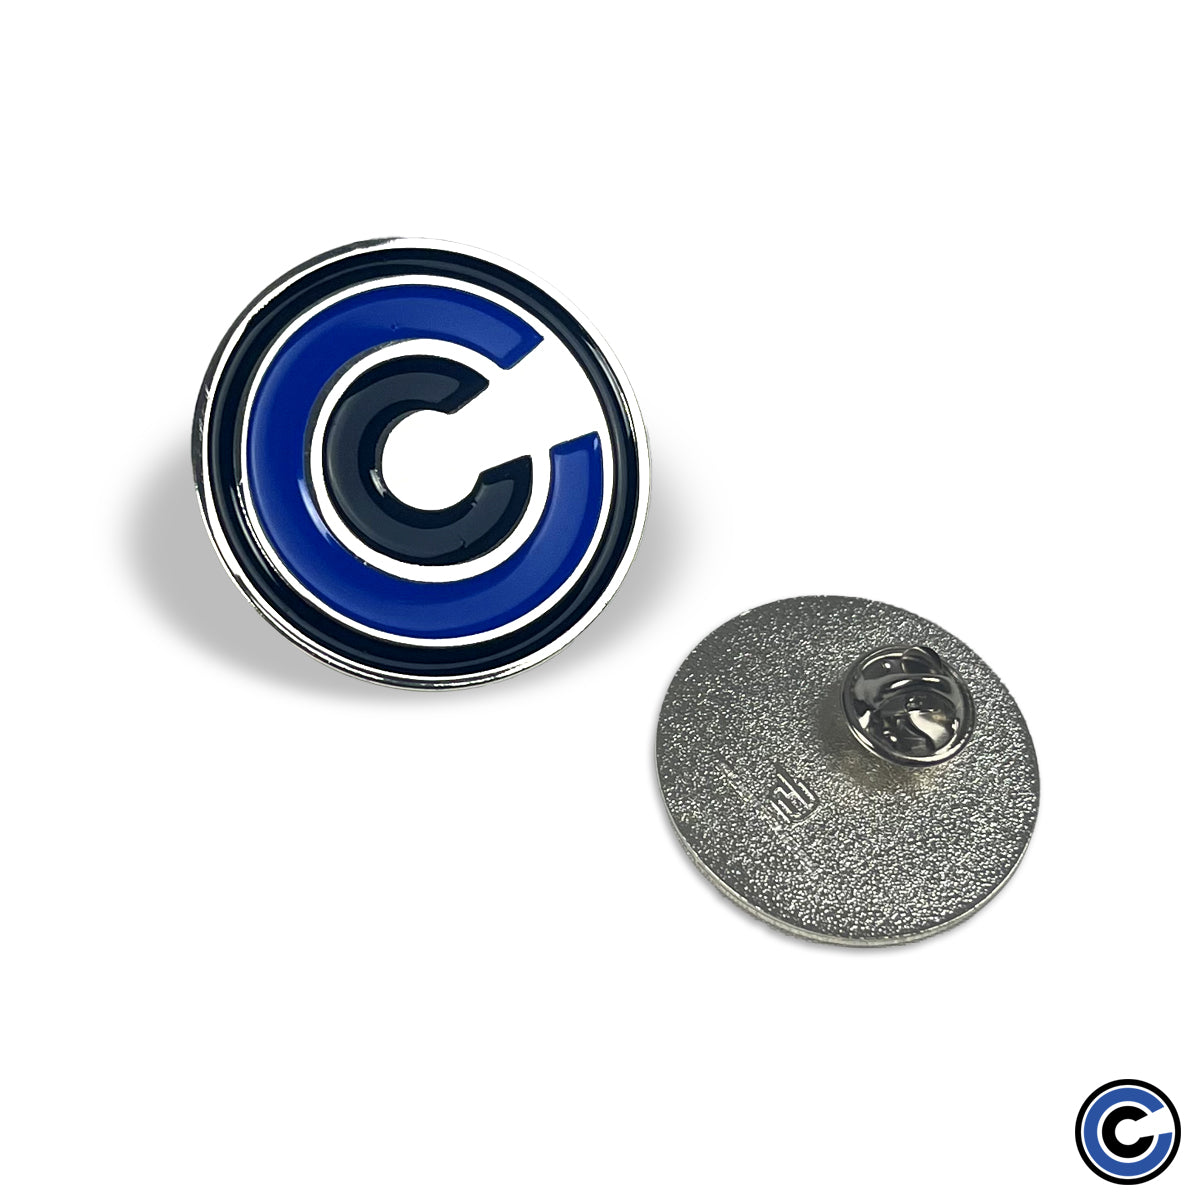 Cold Cuts "CCM Color" Pin